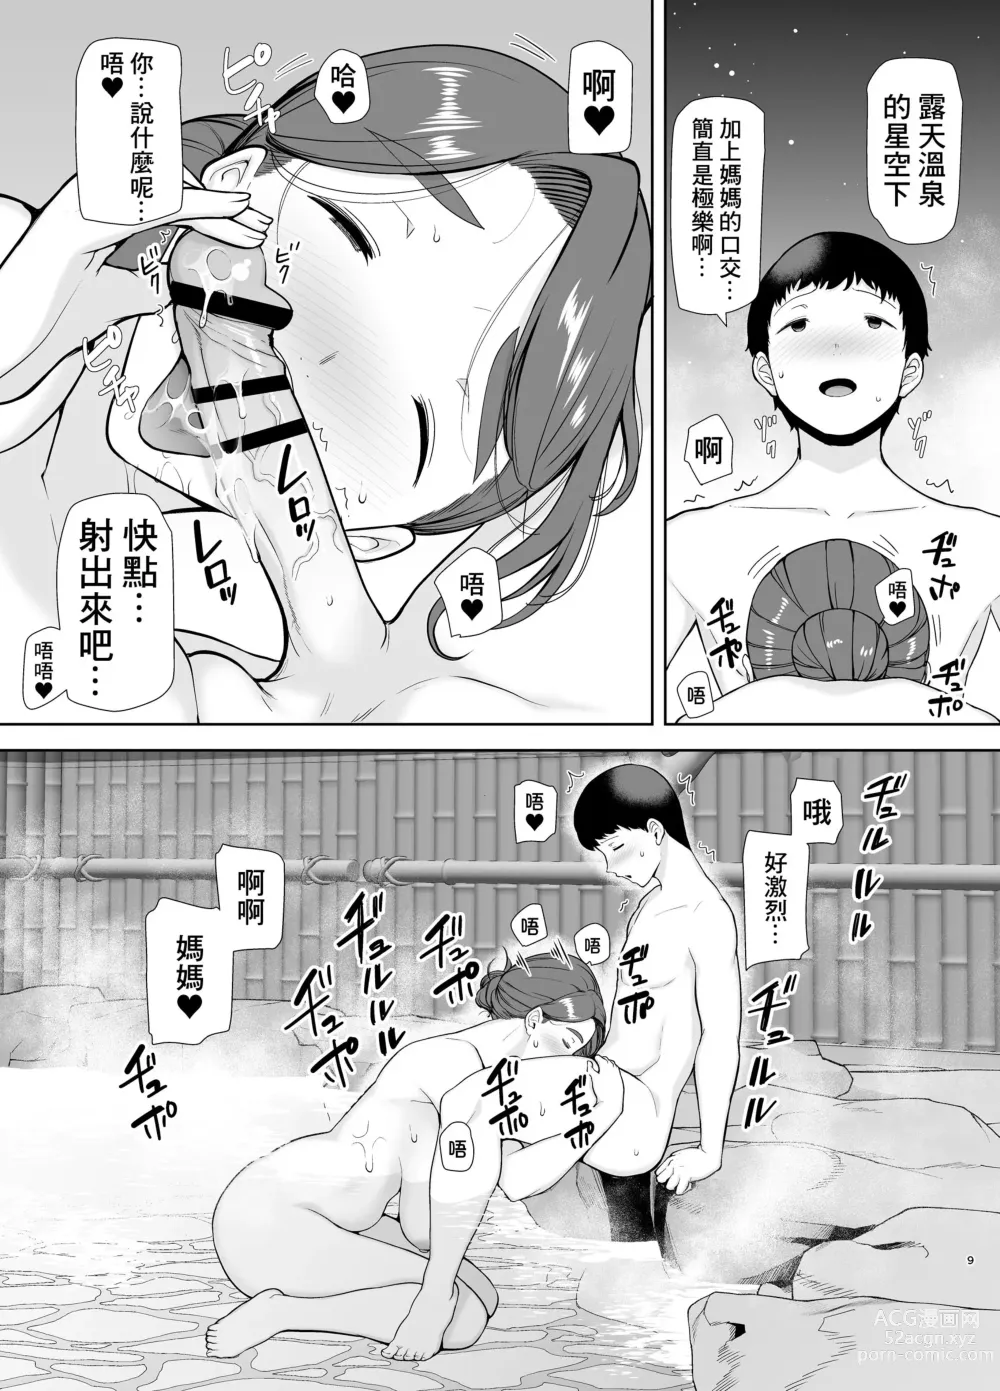 Page 9 of doujinshi 母印堂4